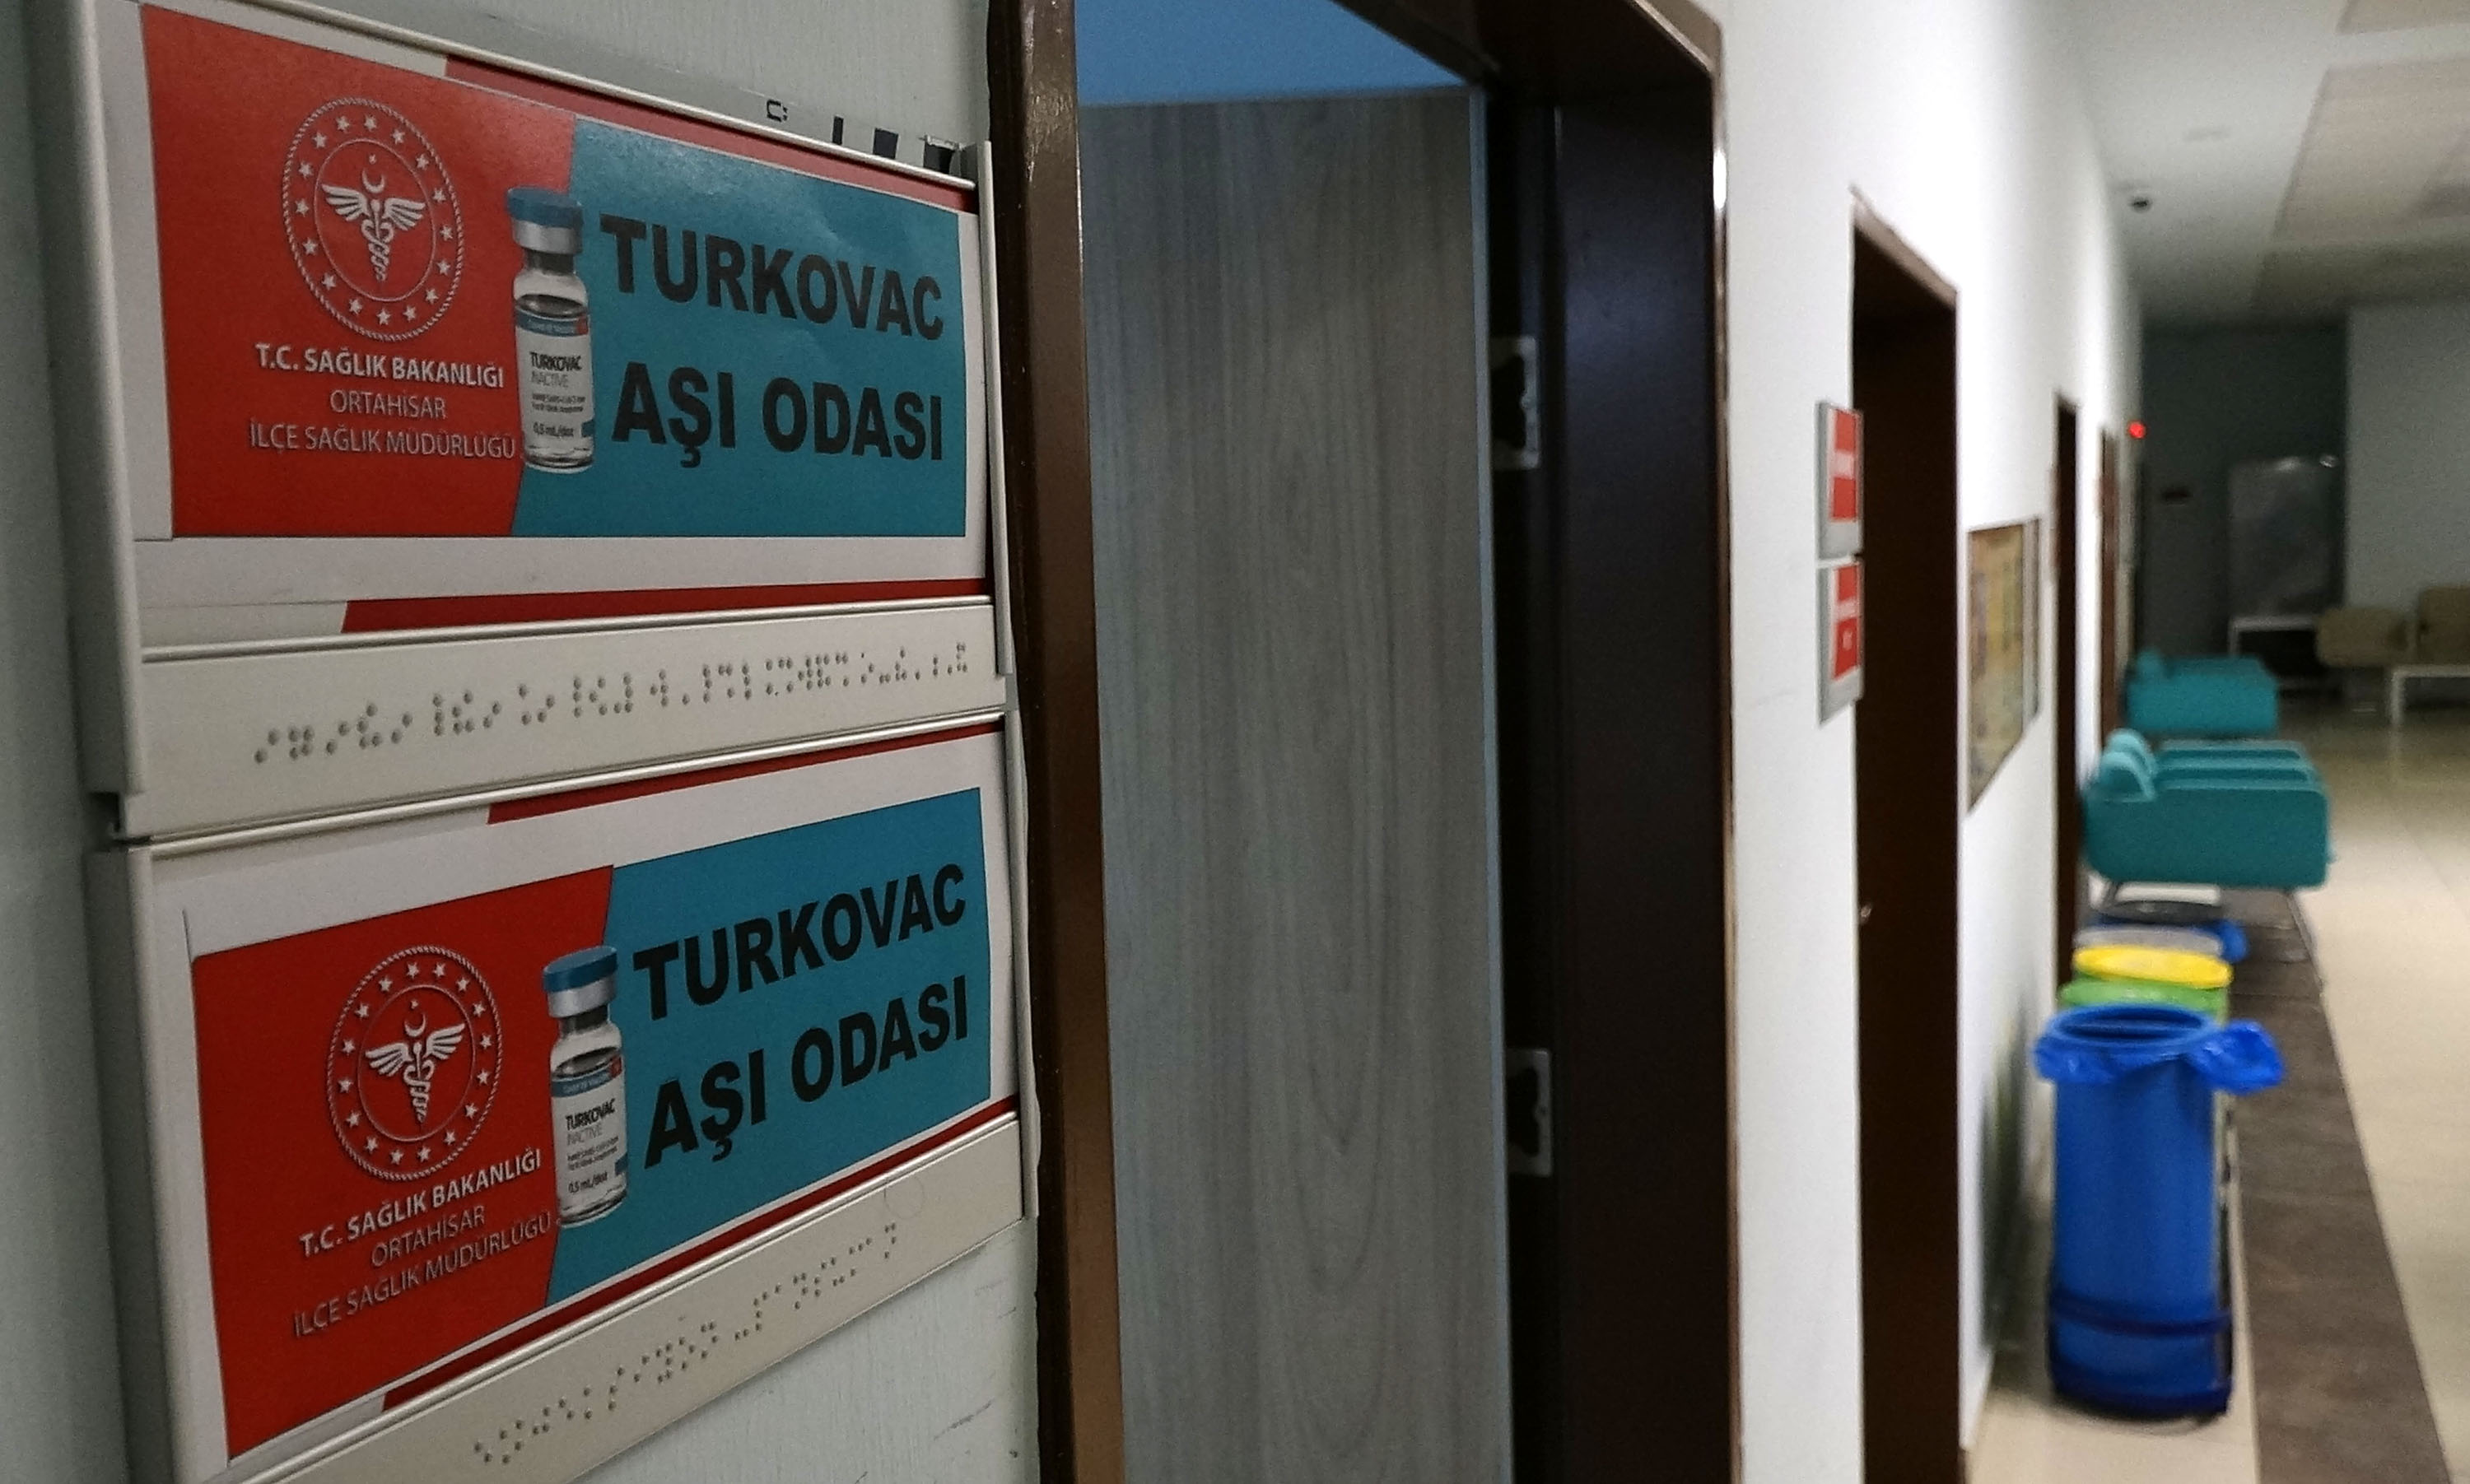 Koronavirüsle mücadeleye karşı yerli imkanlarla geliştirilen Turkovac aşısı, Trabzon'da çeşitli hastanelerde uygulanmaya başlandı. Kentte sistem üzerinden randevu alan vatandaşlar aşı olmak için hastanelere başvurdu.